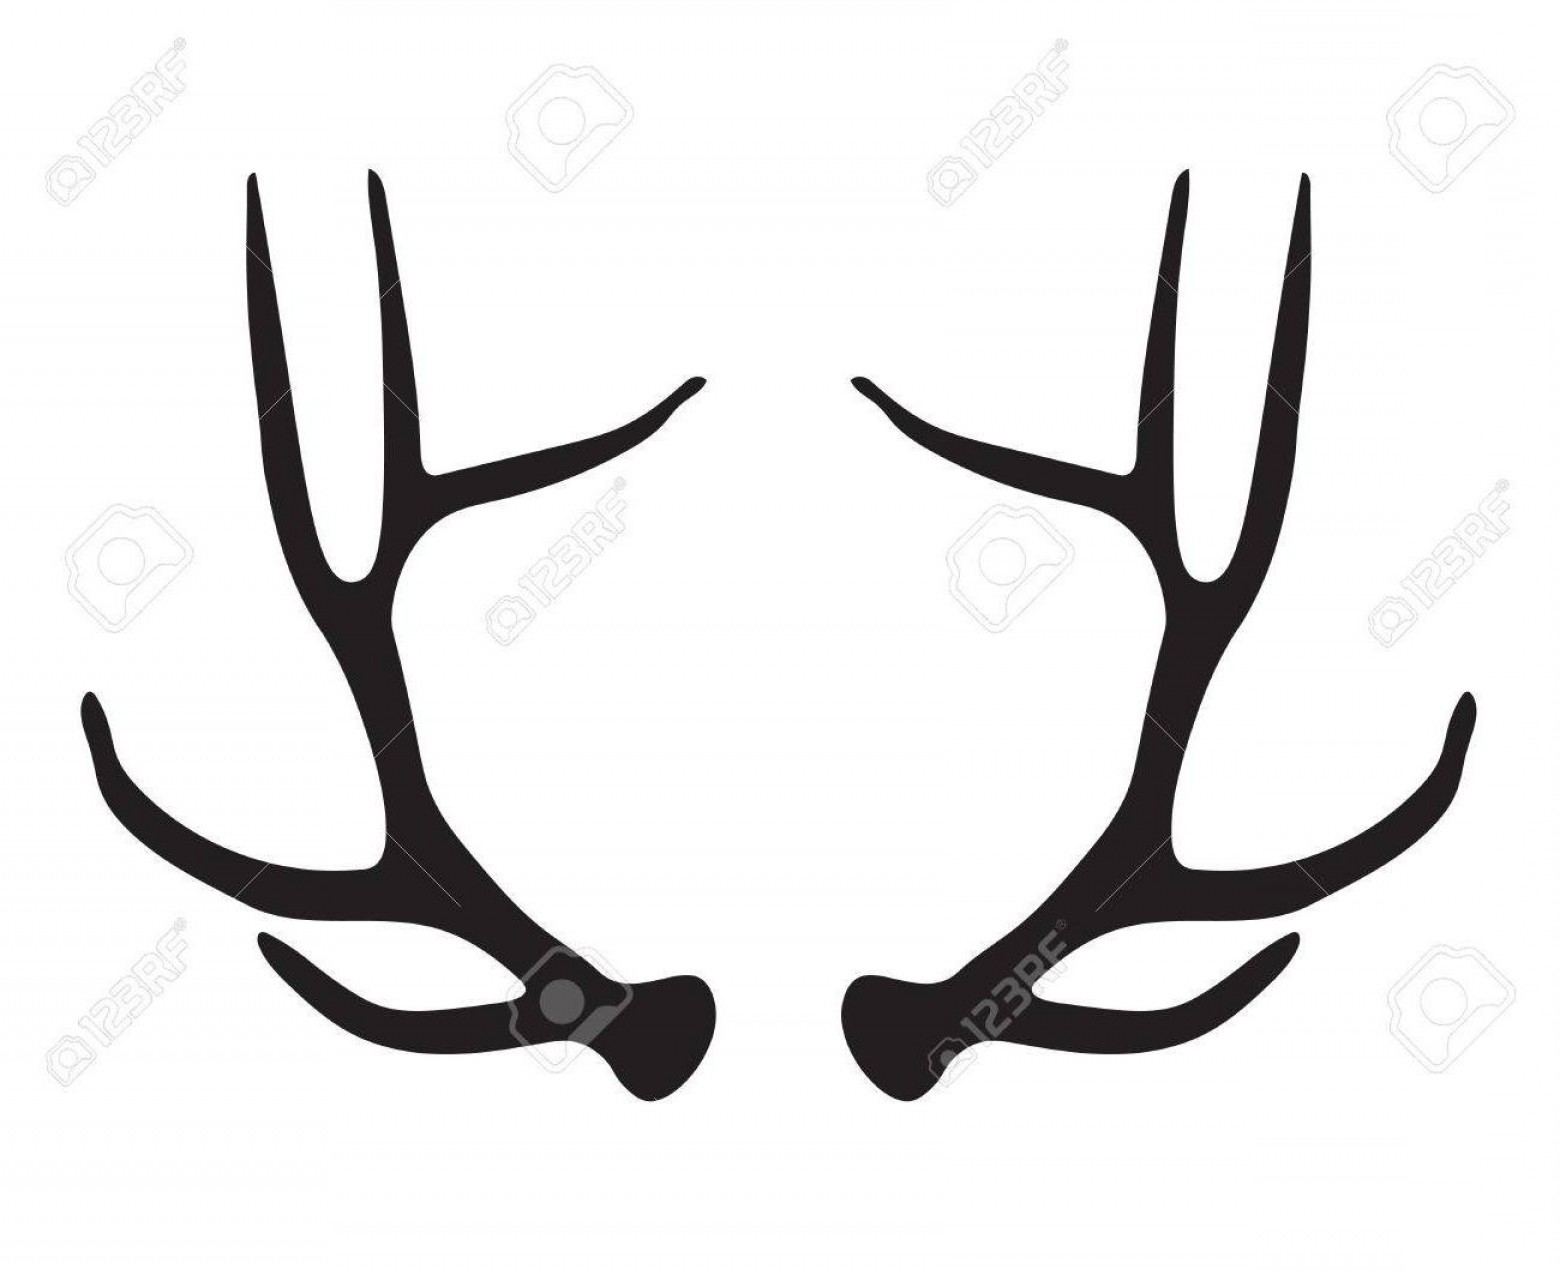 Deer antlers drawing free. Antler clipart vector